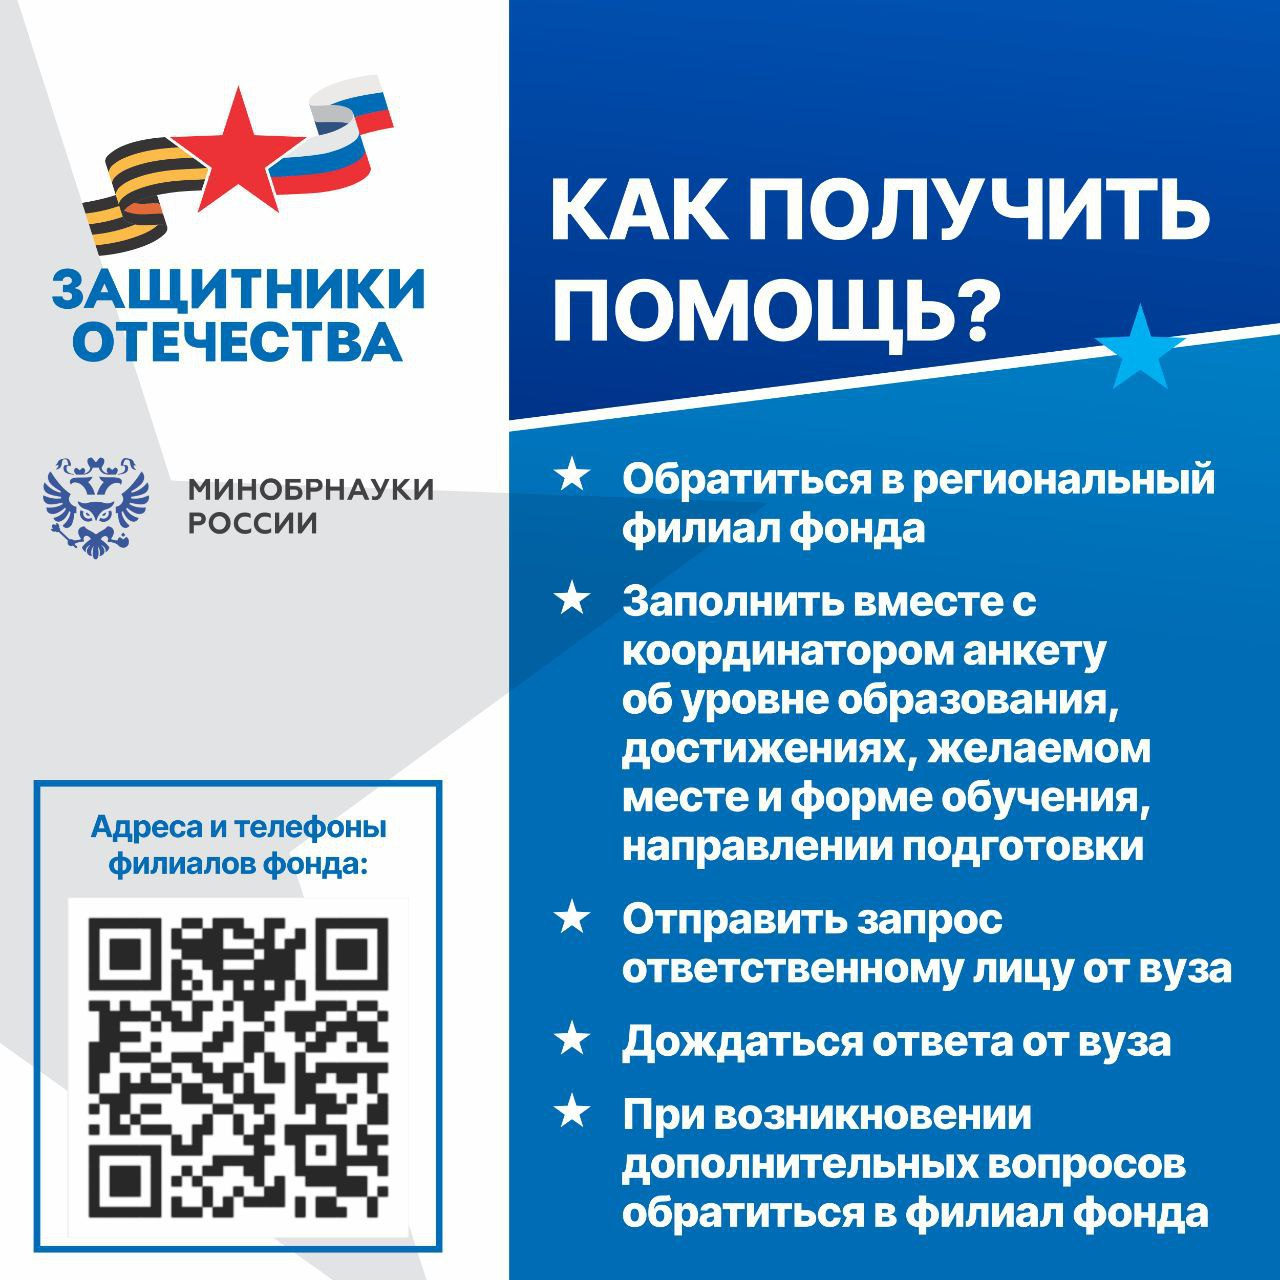 Фонд «Защитники Отечества» и Министерство образования России запустили специальную платформу для приема заявок на переобучение от ветеранов.